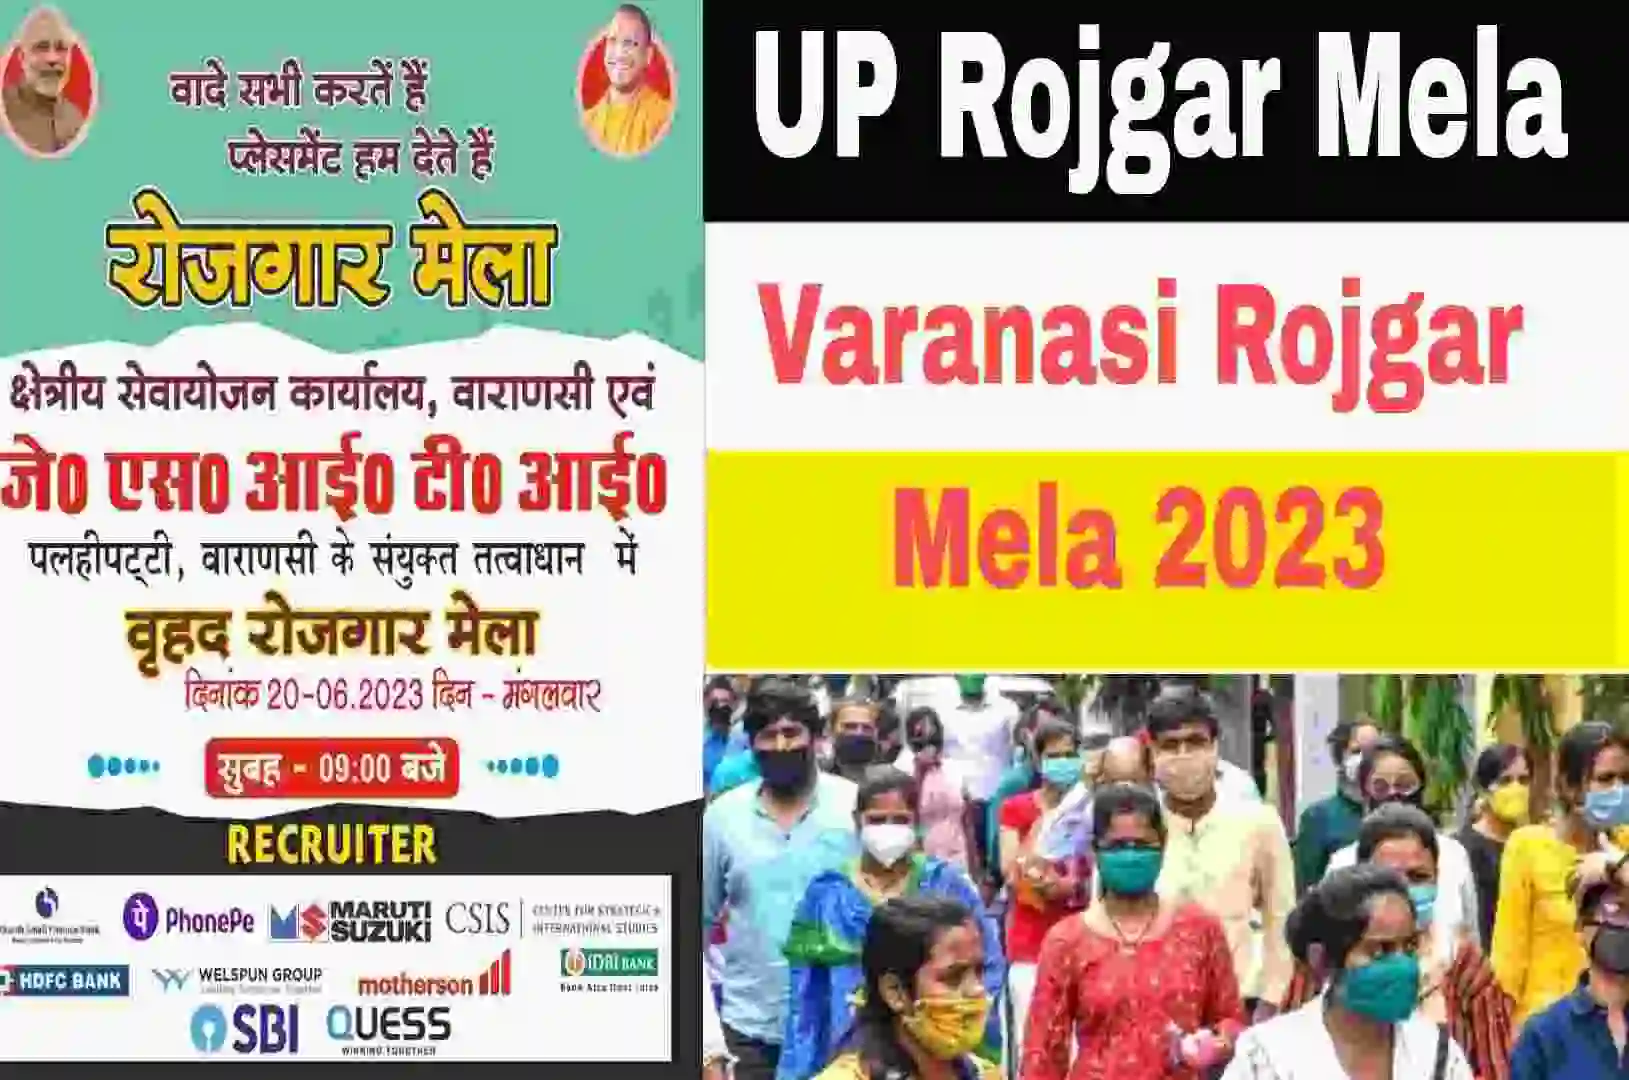 UP Rojgar Mela 2023 : वाराणसी में इस दिन होने जा रहा है रोजगार मेला